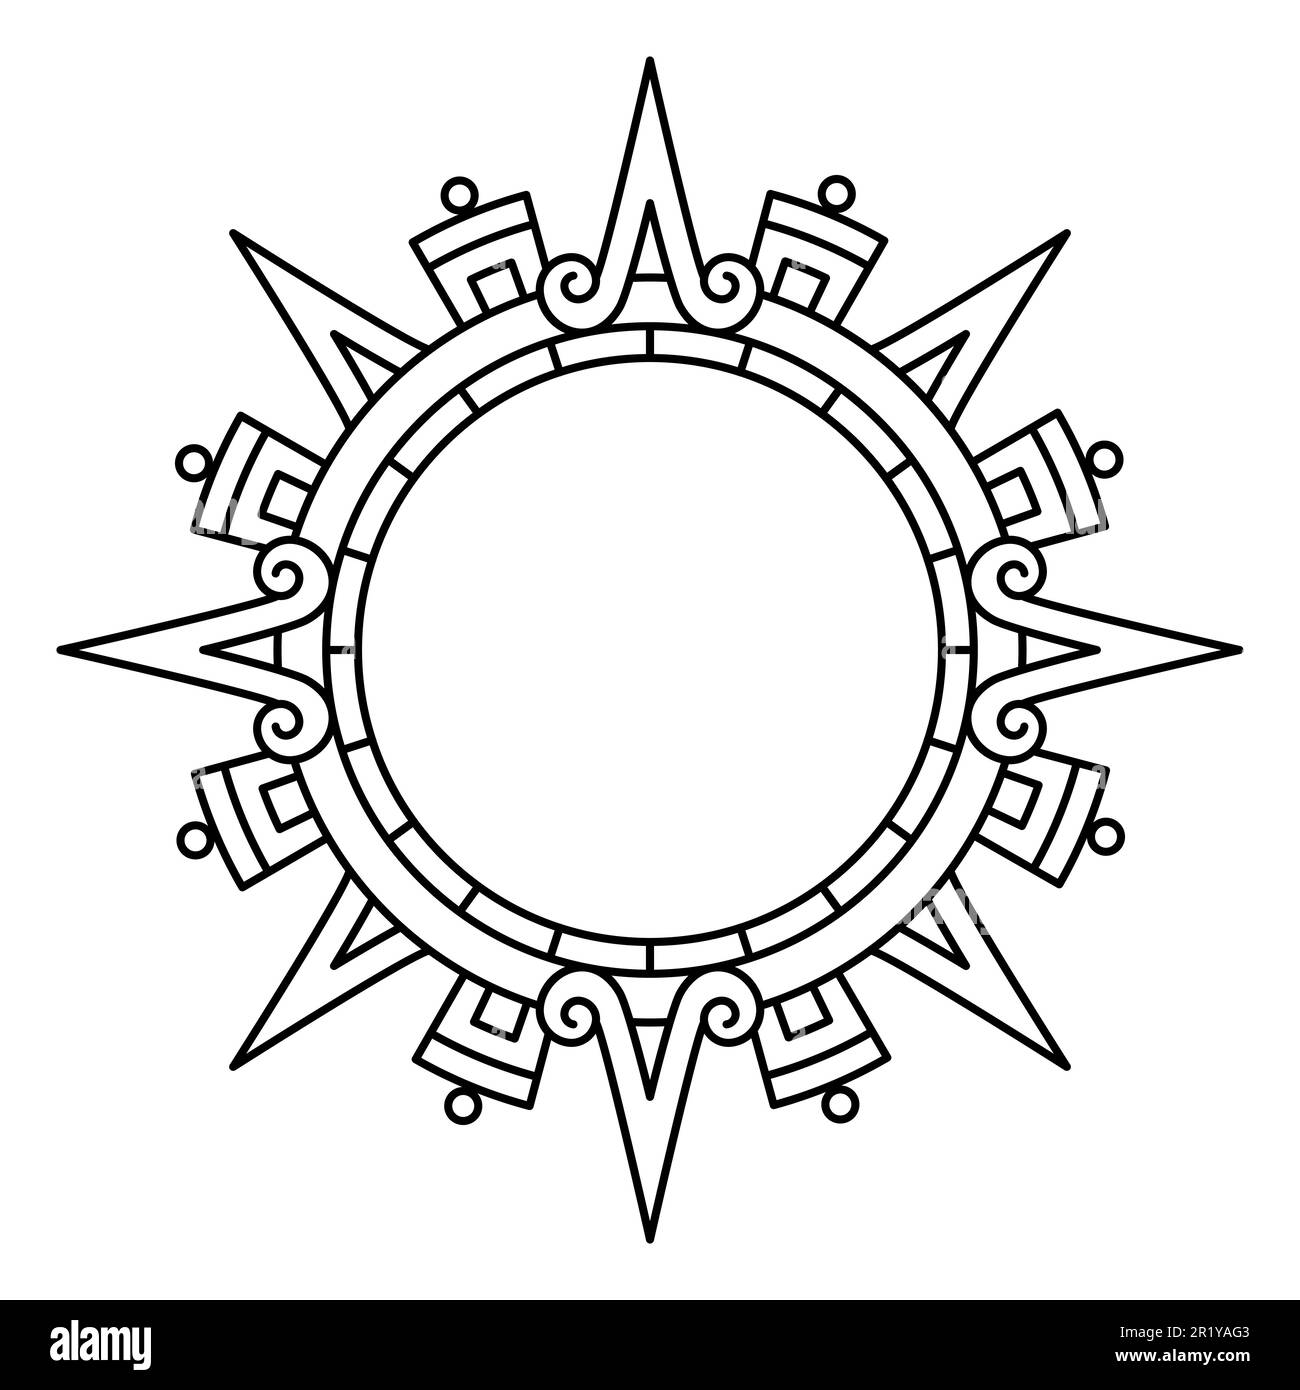 Disco solare Aztec, simbolo del sole e diadema, che rappresenta la divinità del sole Aztec Tonatiuh. 4 frecce o raggi grandi che puntano nelle direzioni cardinali. Foto Stock